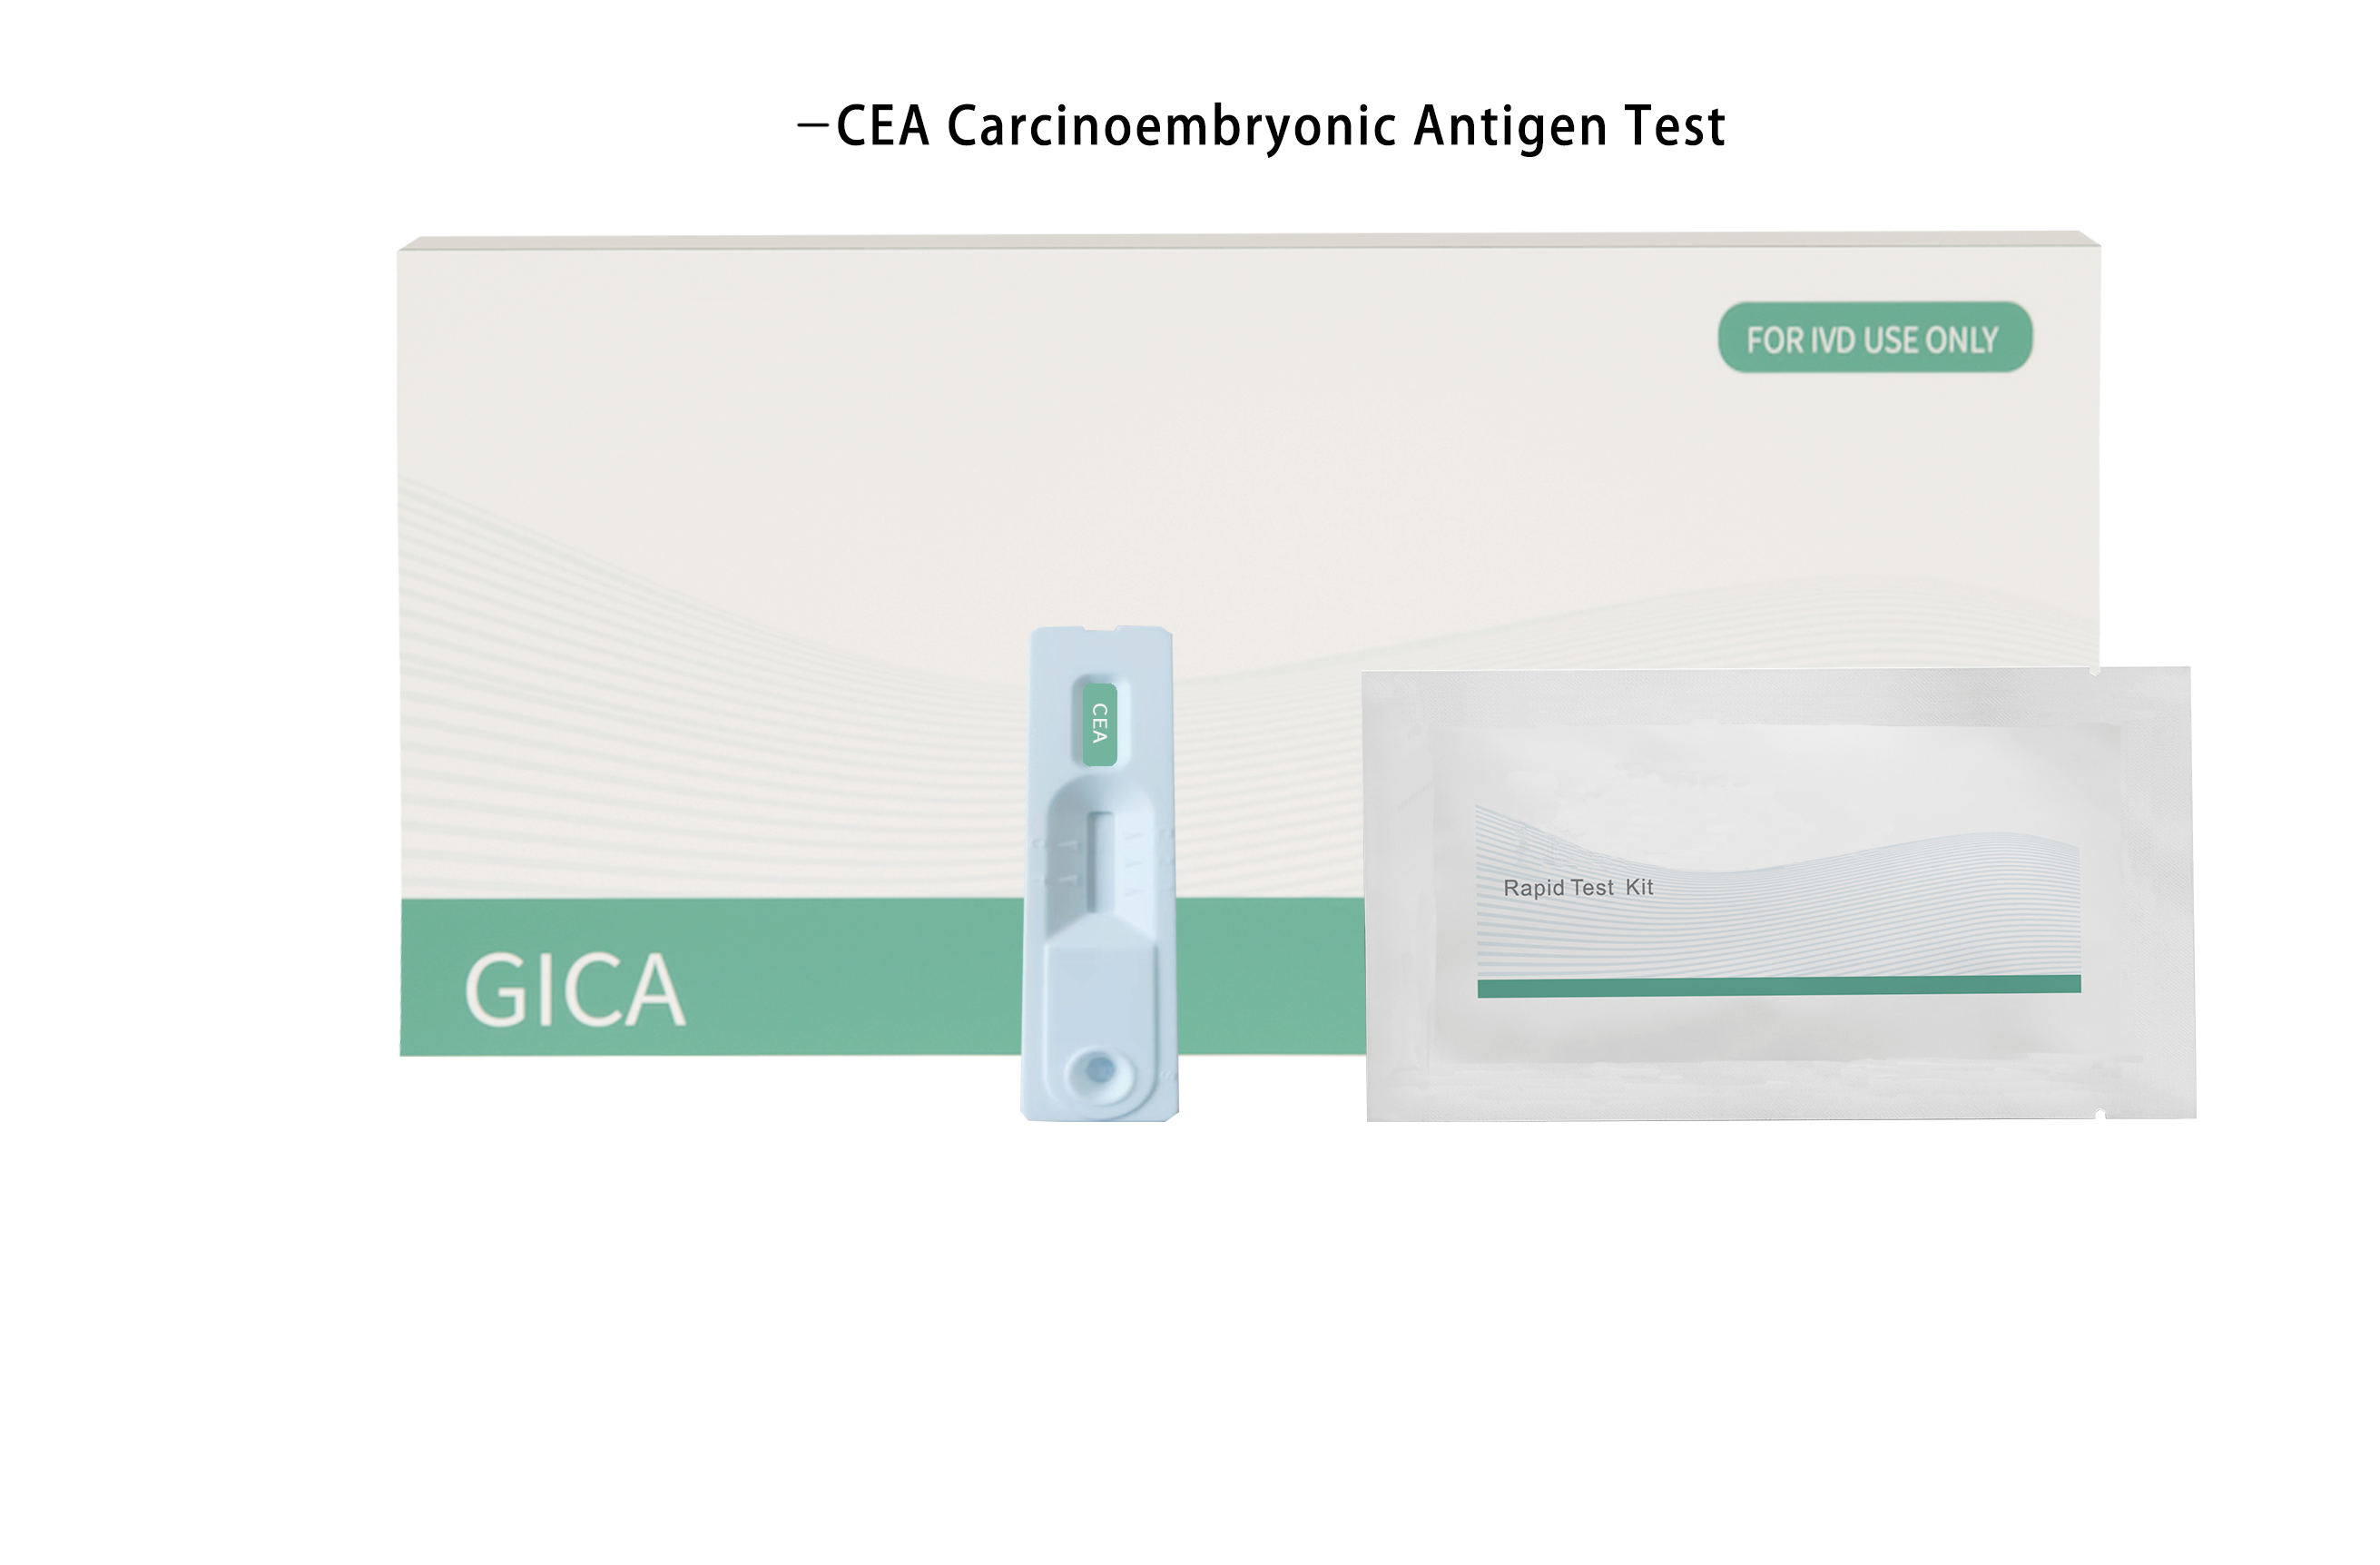 CEA. Carcinoembryoni c antigen test